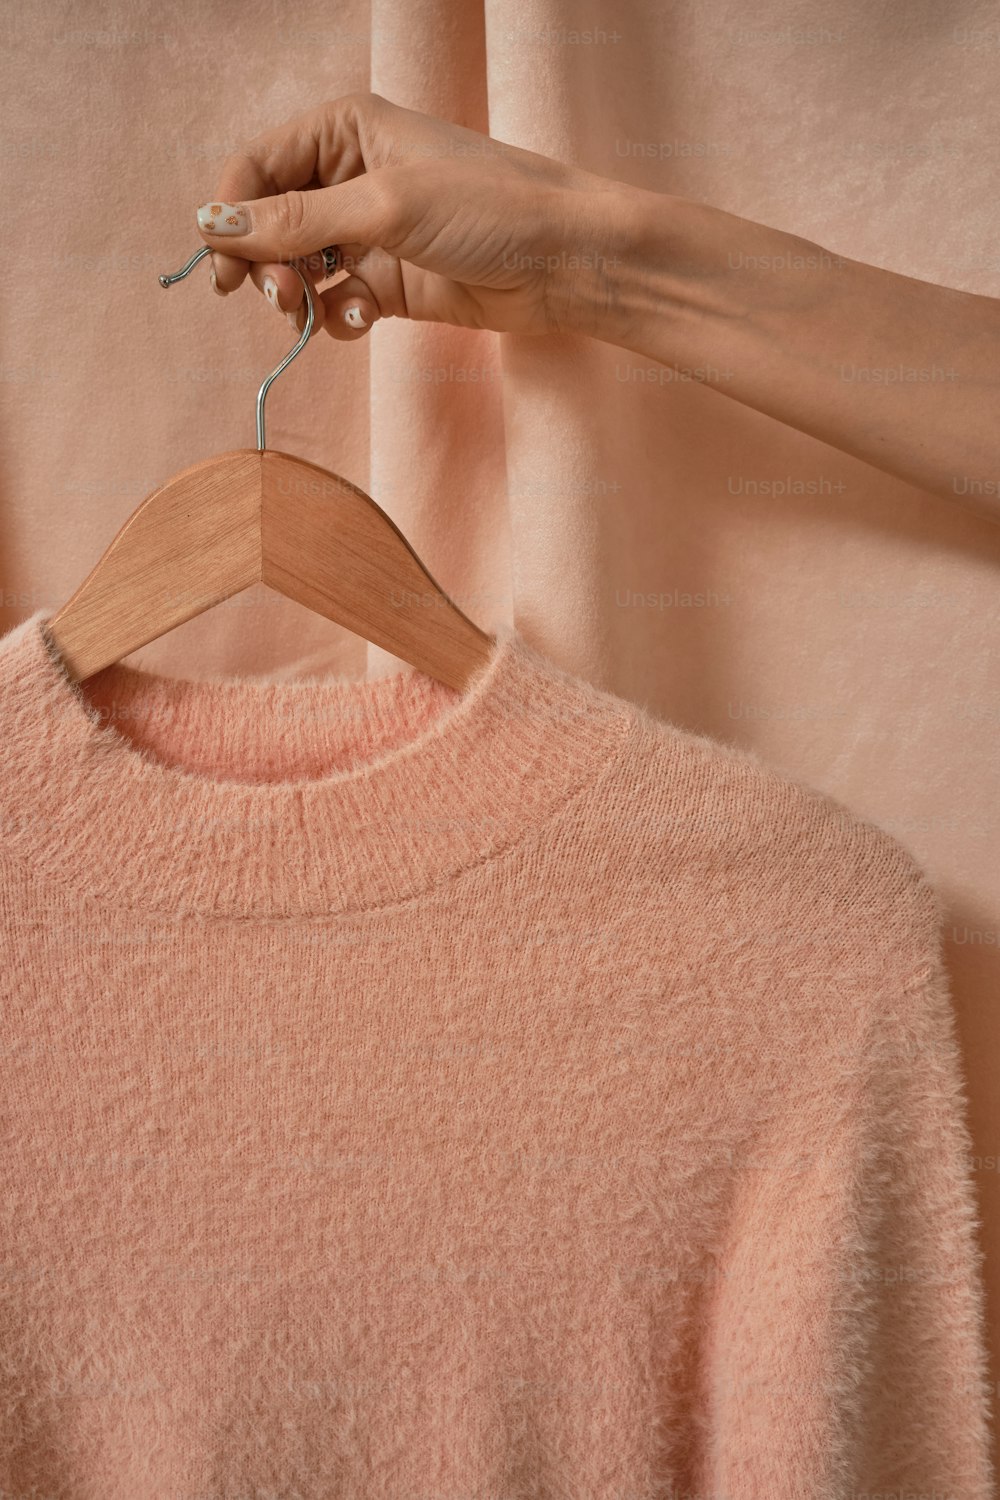 la mano de una mujer sosteniendo una percha de madera sobre un suéter rosa